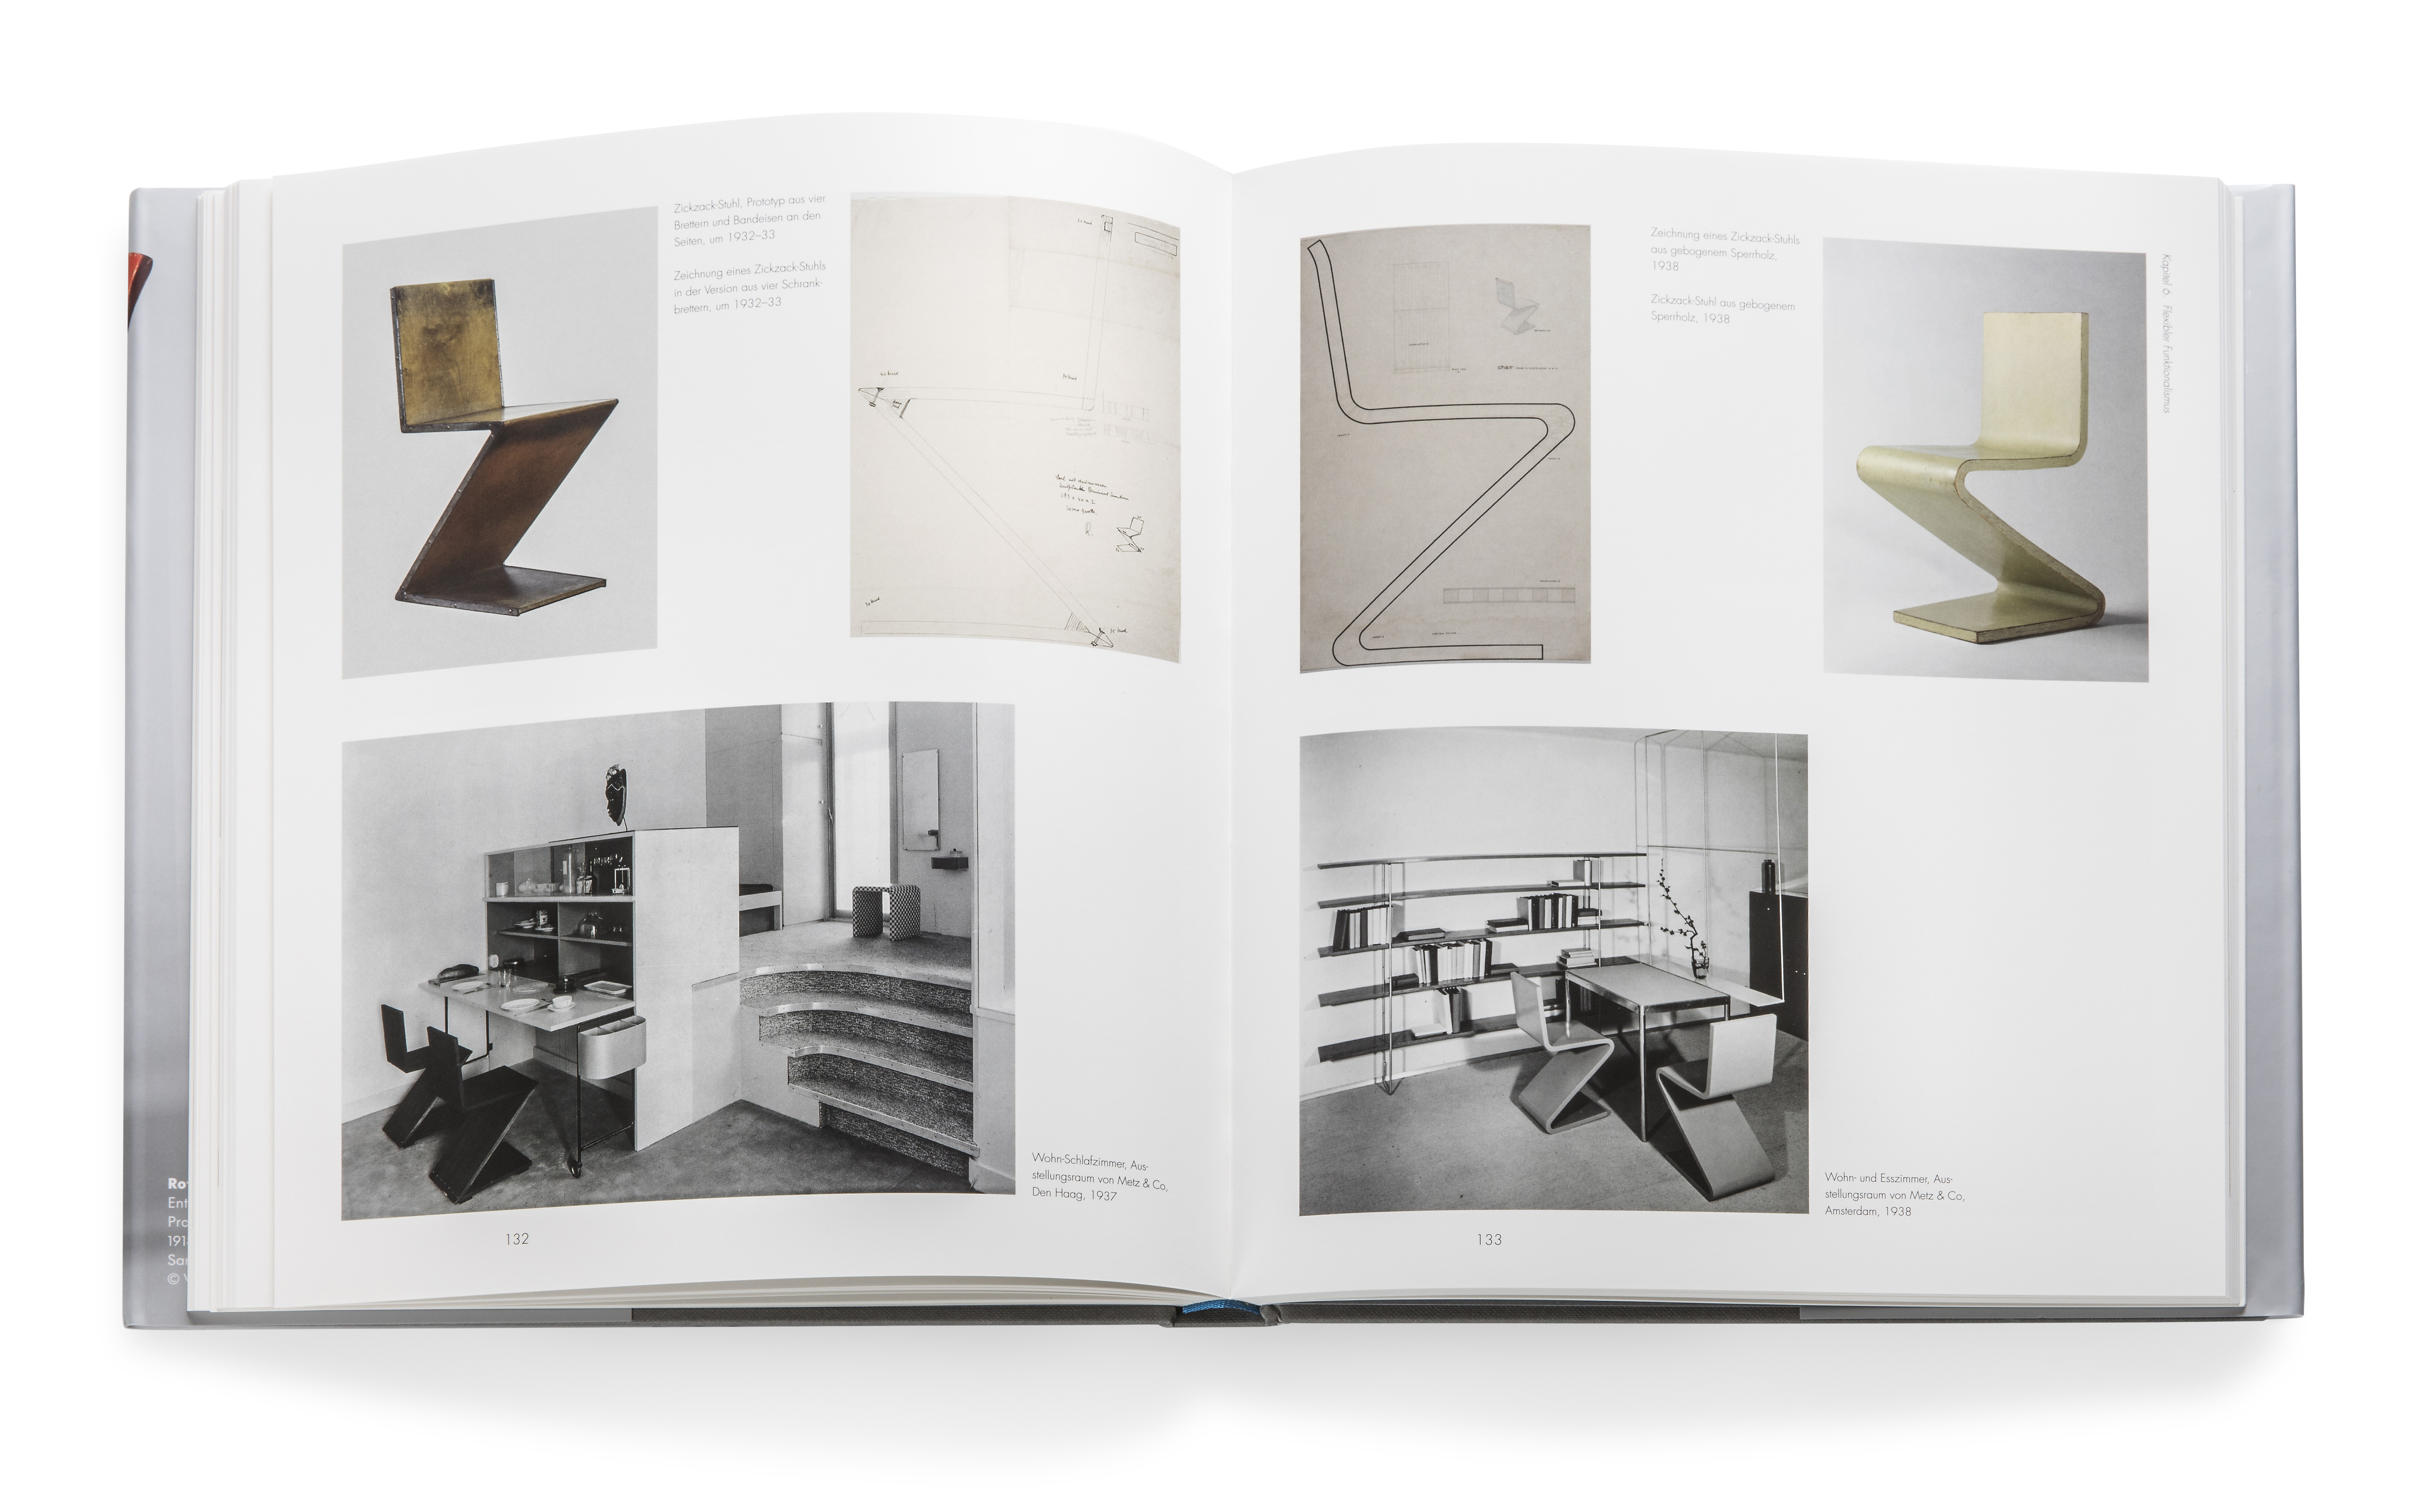 Gerrit Rietveld | Die Revolution des Raums